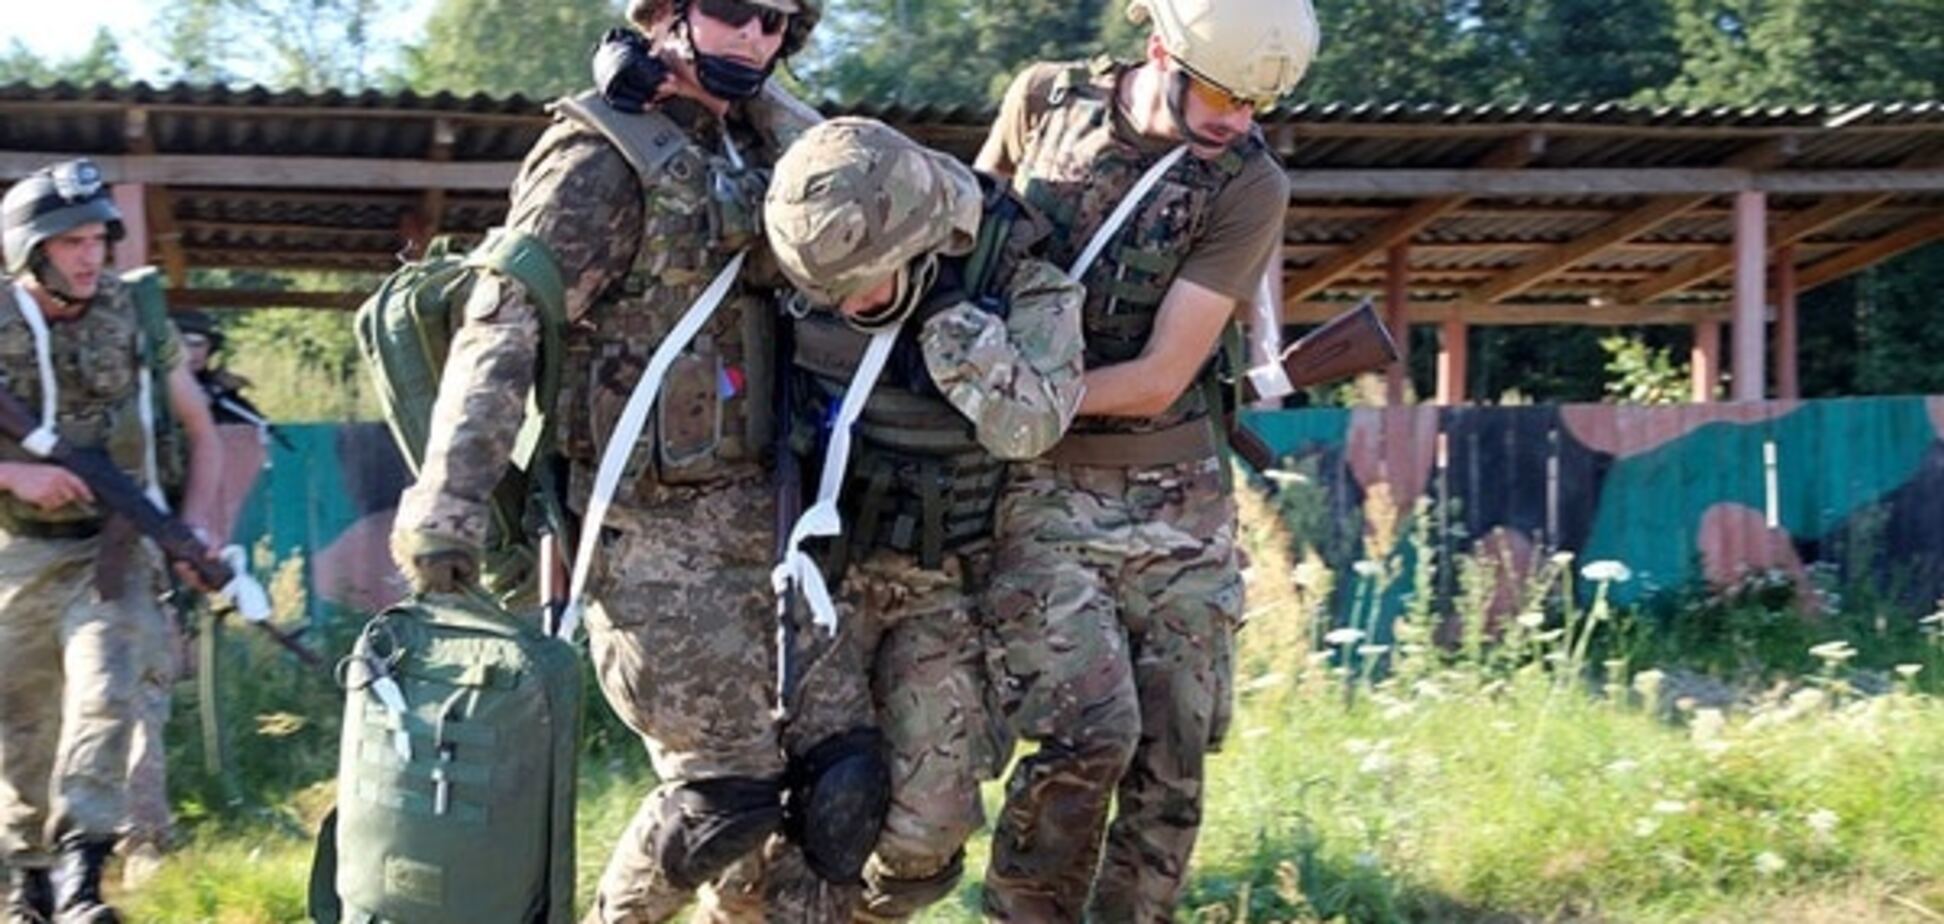 українські військовослужбовці